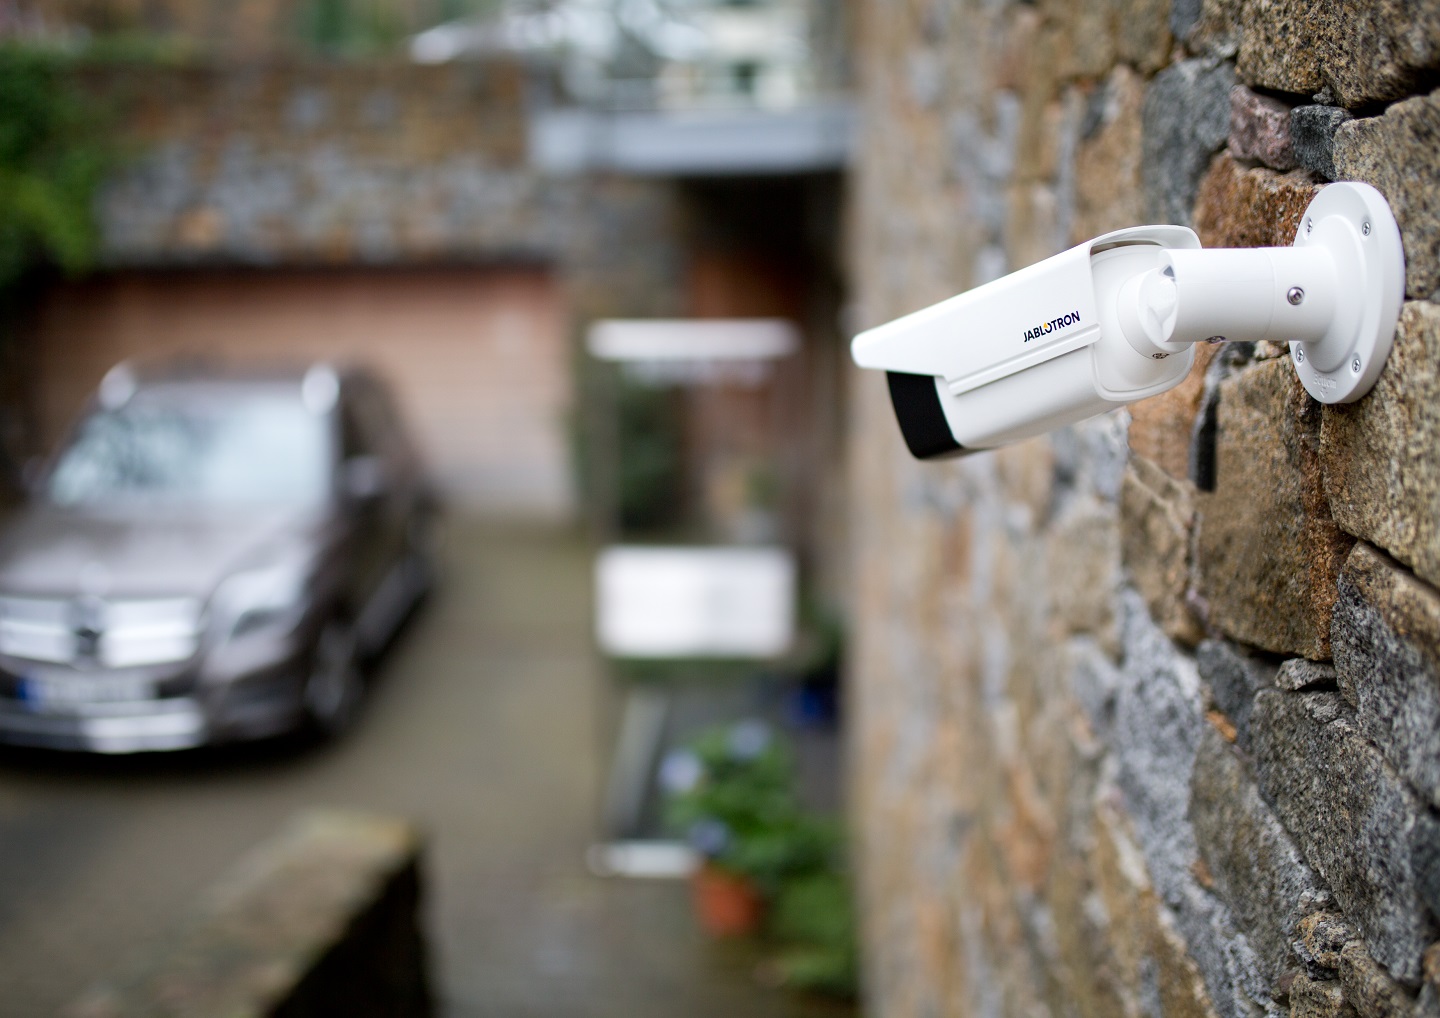 camera jablotron outdoor-báo động chống đột nhập-bao động lắp nhà phố-báo động nhà kho-nhà xưởng